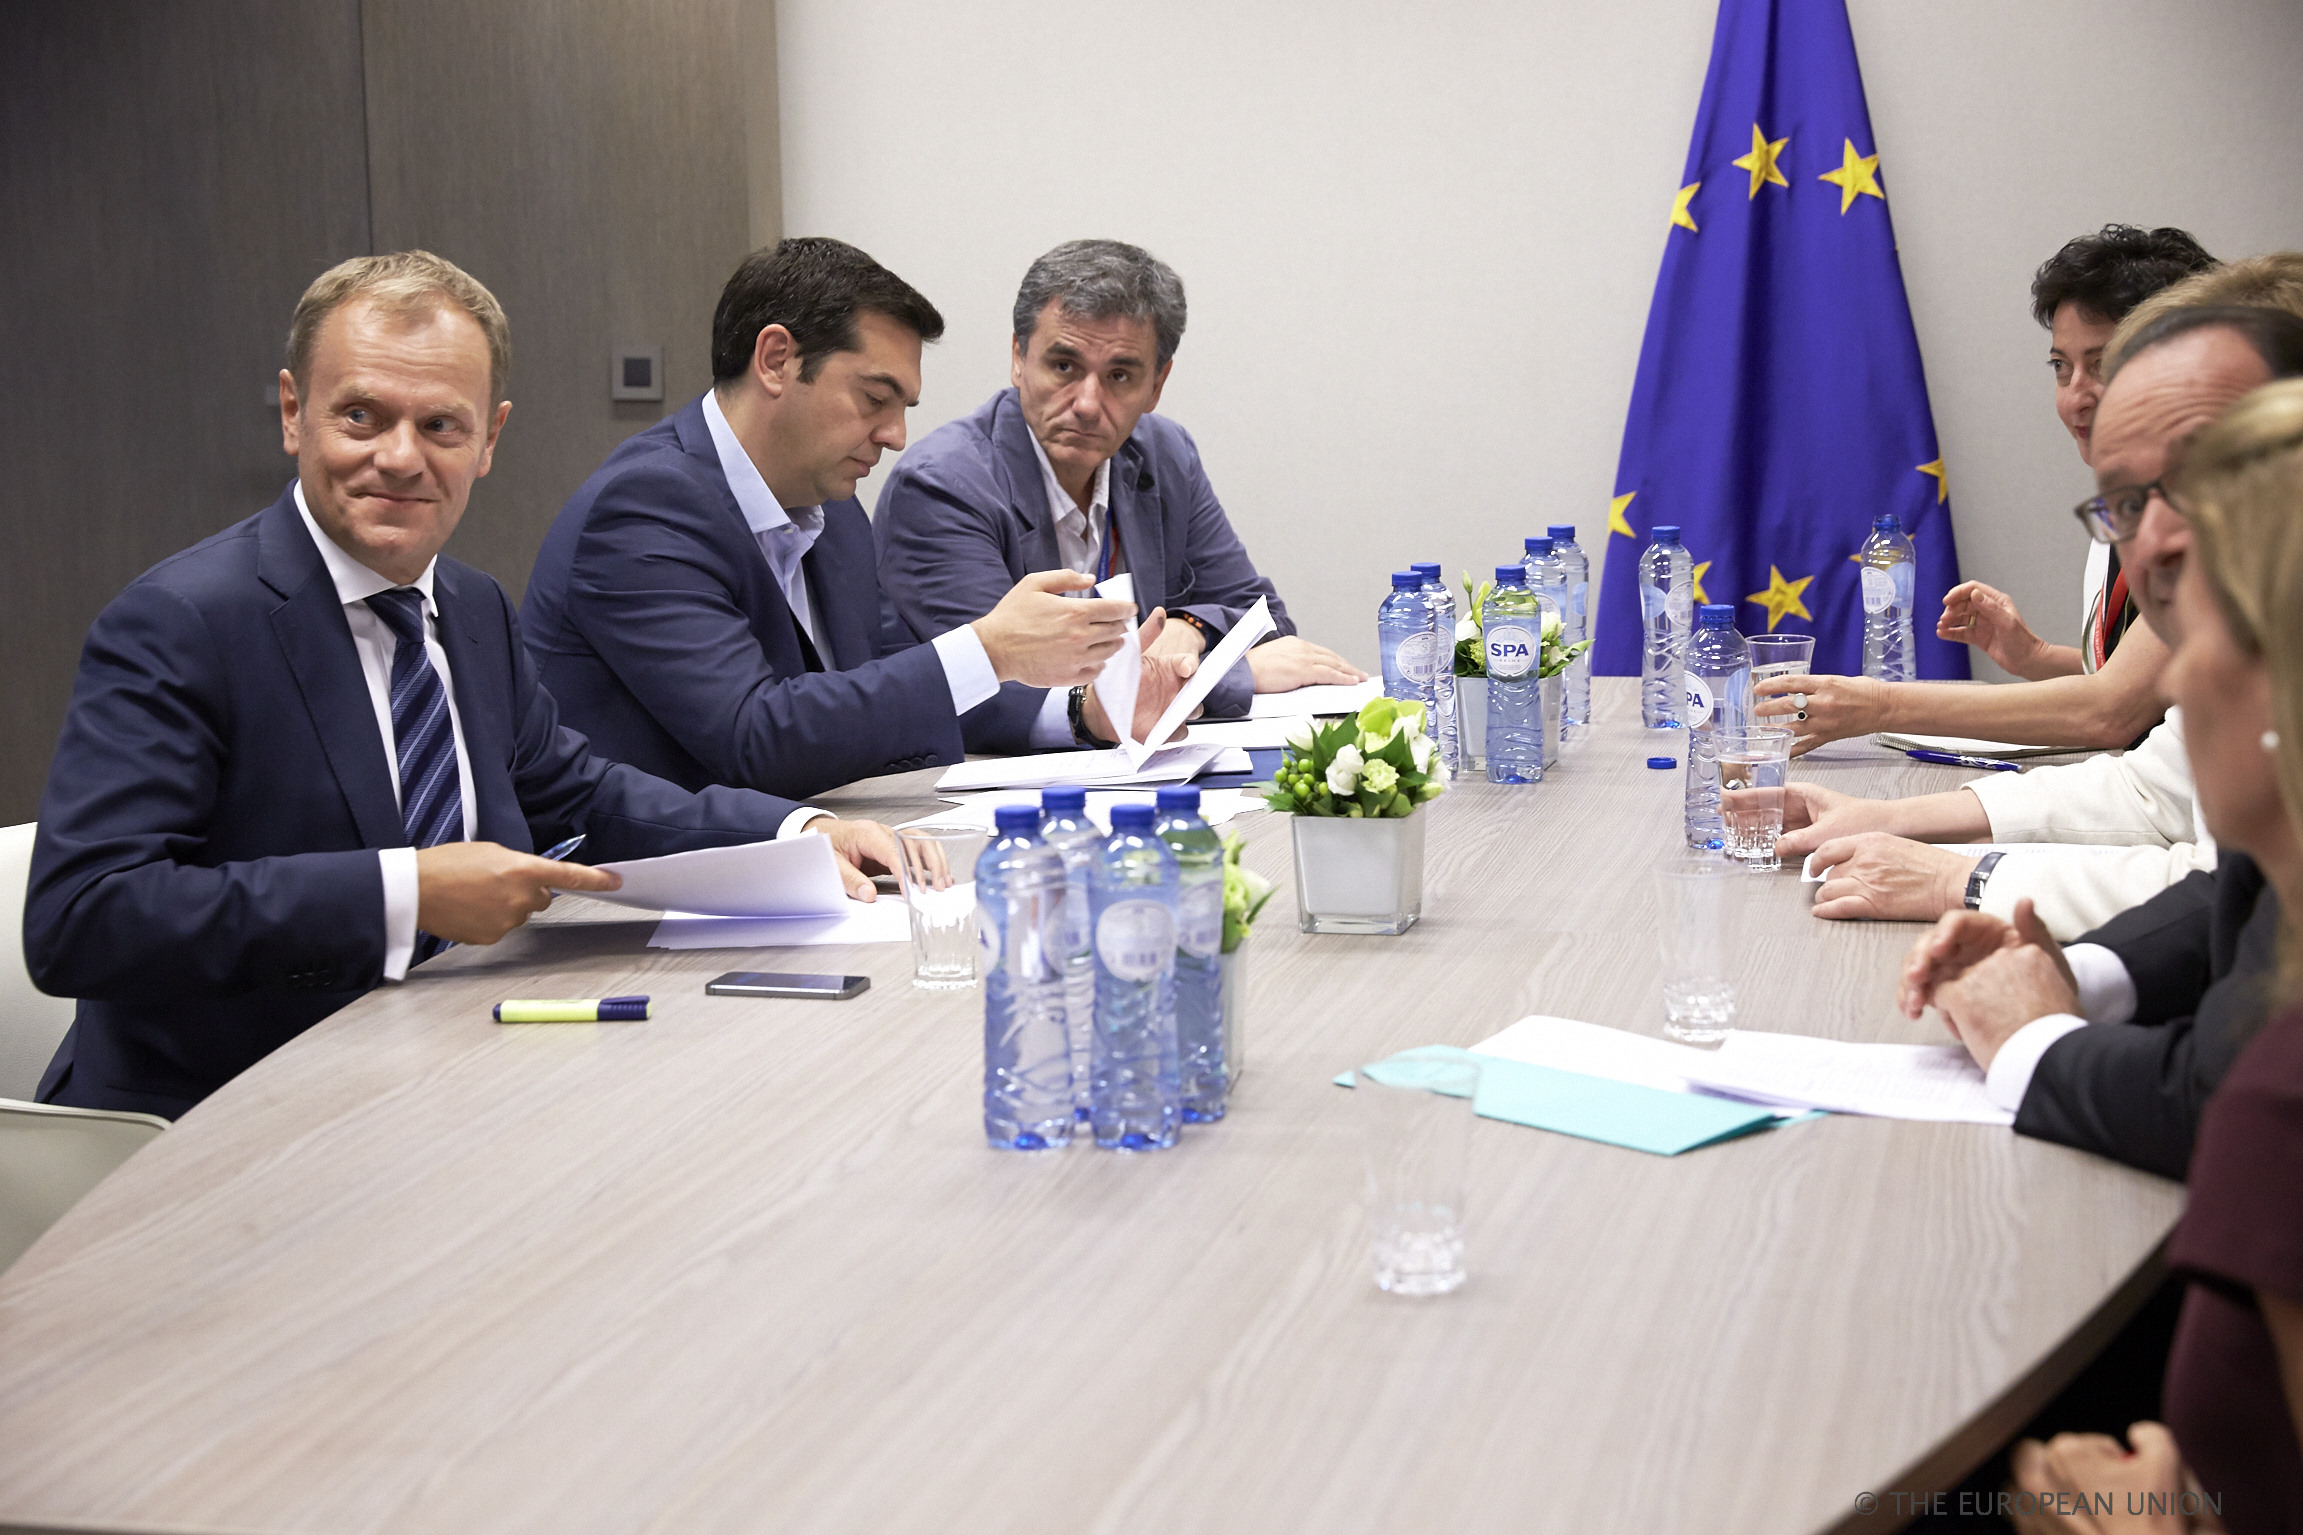 Besprekingen tijdens de Eurotop in Brussel over resultaten van onderhandelingen met Griekenland, 12 juli 2015